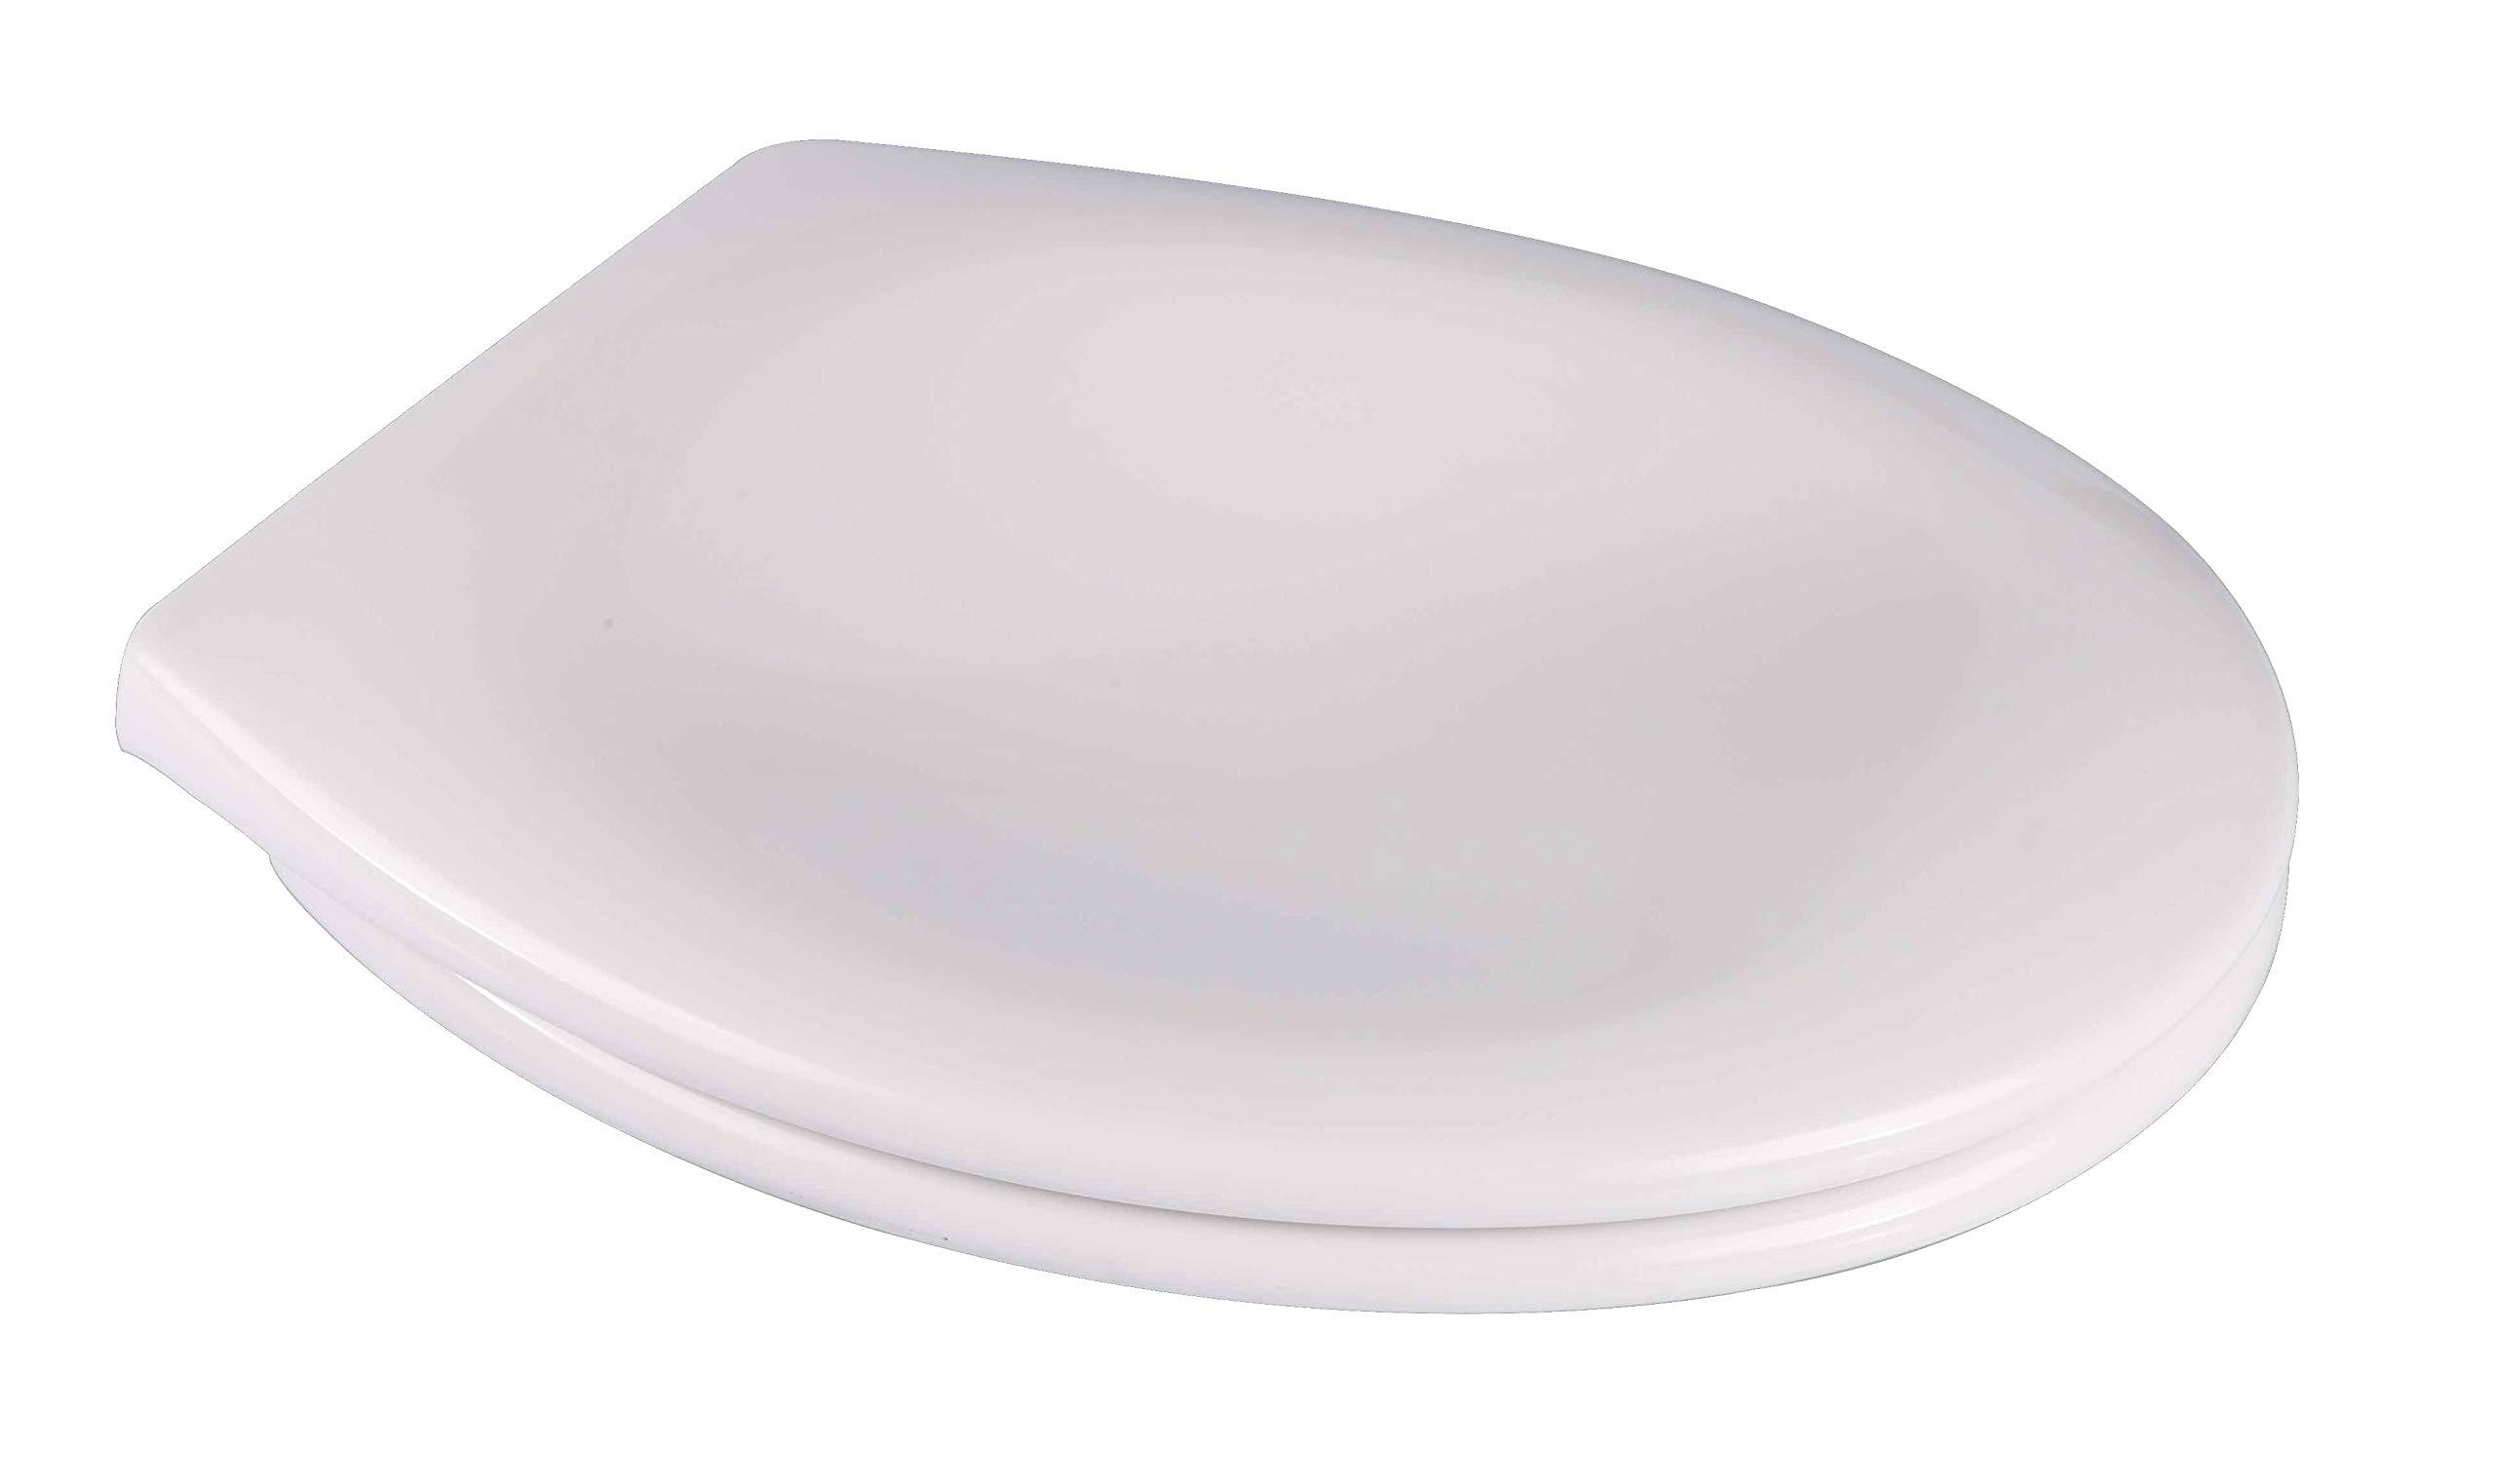 Grünblatt WC Sitz passend zu allen handelsüblichen O-Form WCs, Hochwertige Antibakterielle Duroplast, Absenkautomatik, abnehmbar zur Reinigung, Weiß (Design)